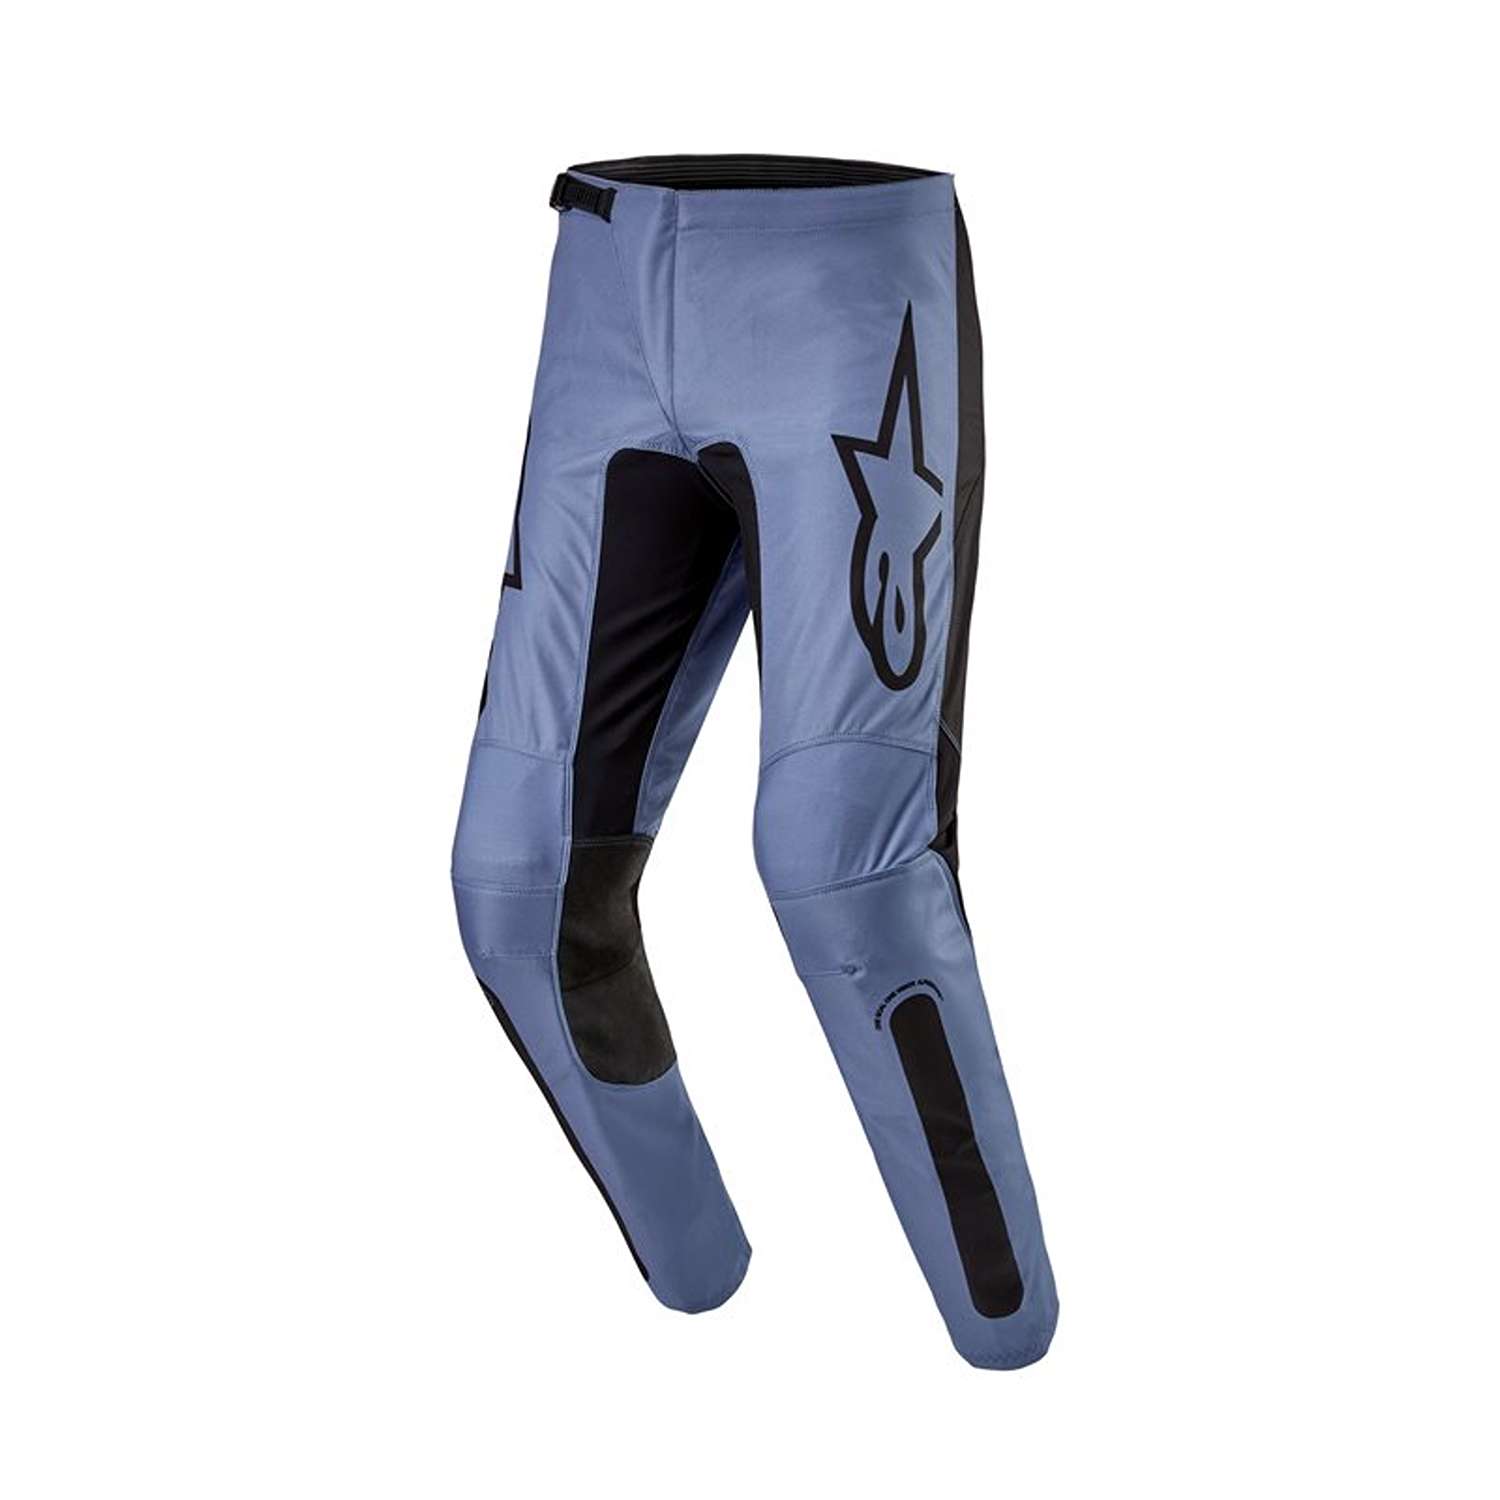 Image of EU Alpinestars Fluid Lurv Pants Light Blue Black Taille 36